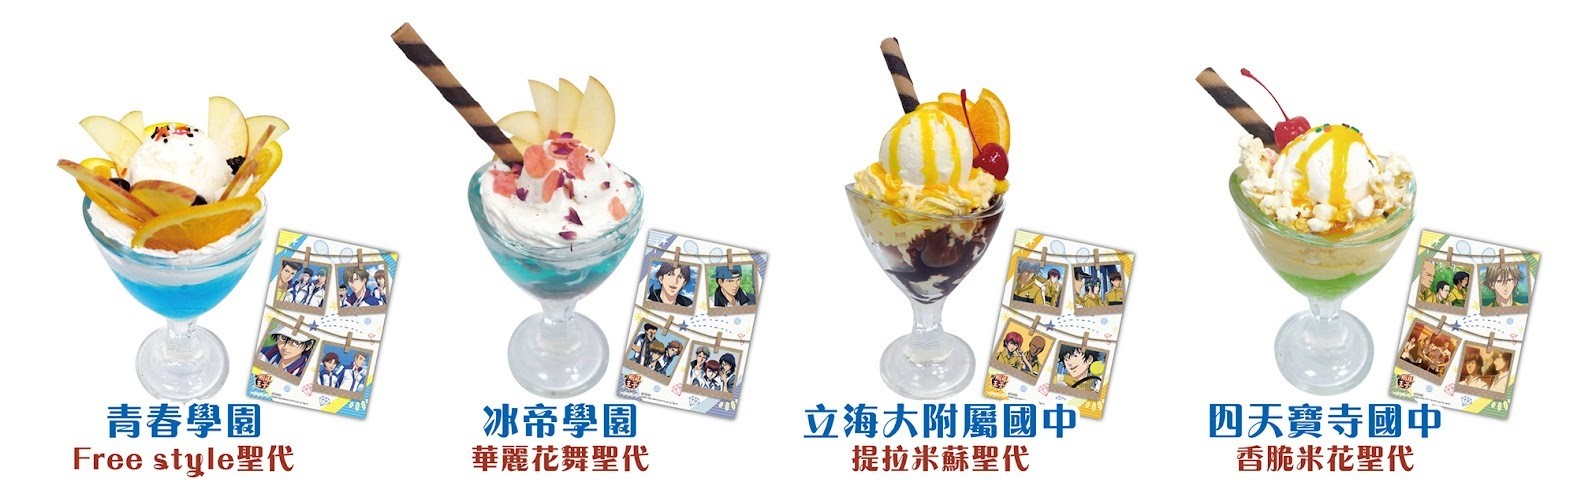 《新網球王子》主題咖啡廳 8/20 起台北三創登場 「快樂夏日情人節」活動同日展開